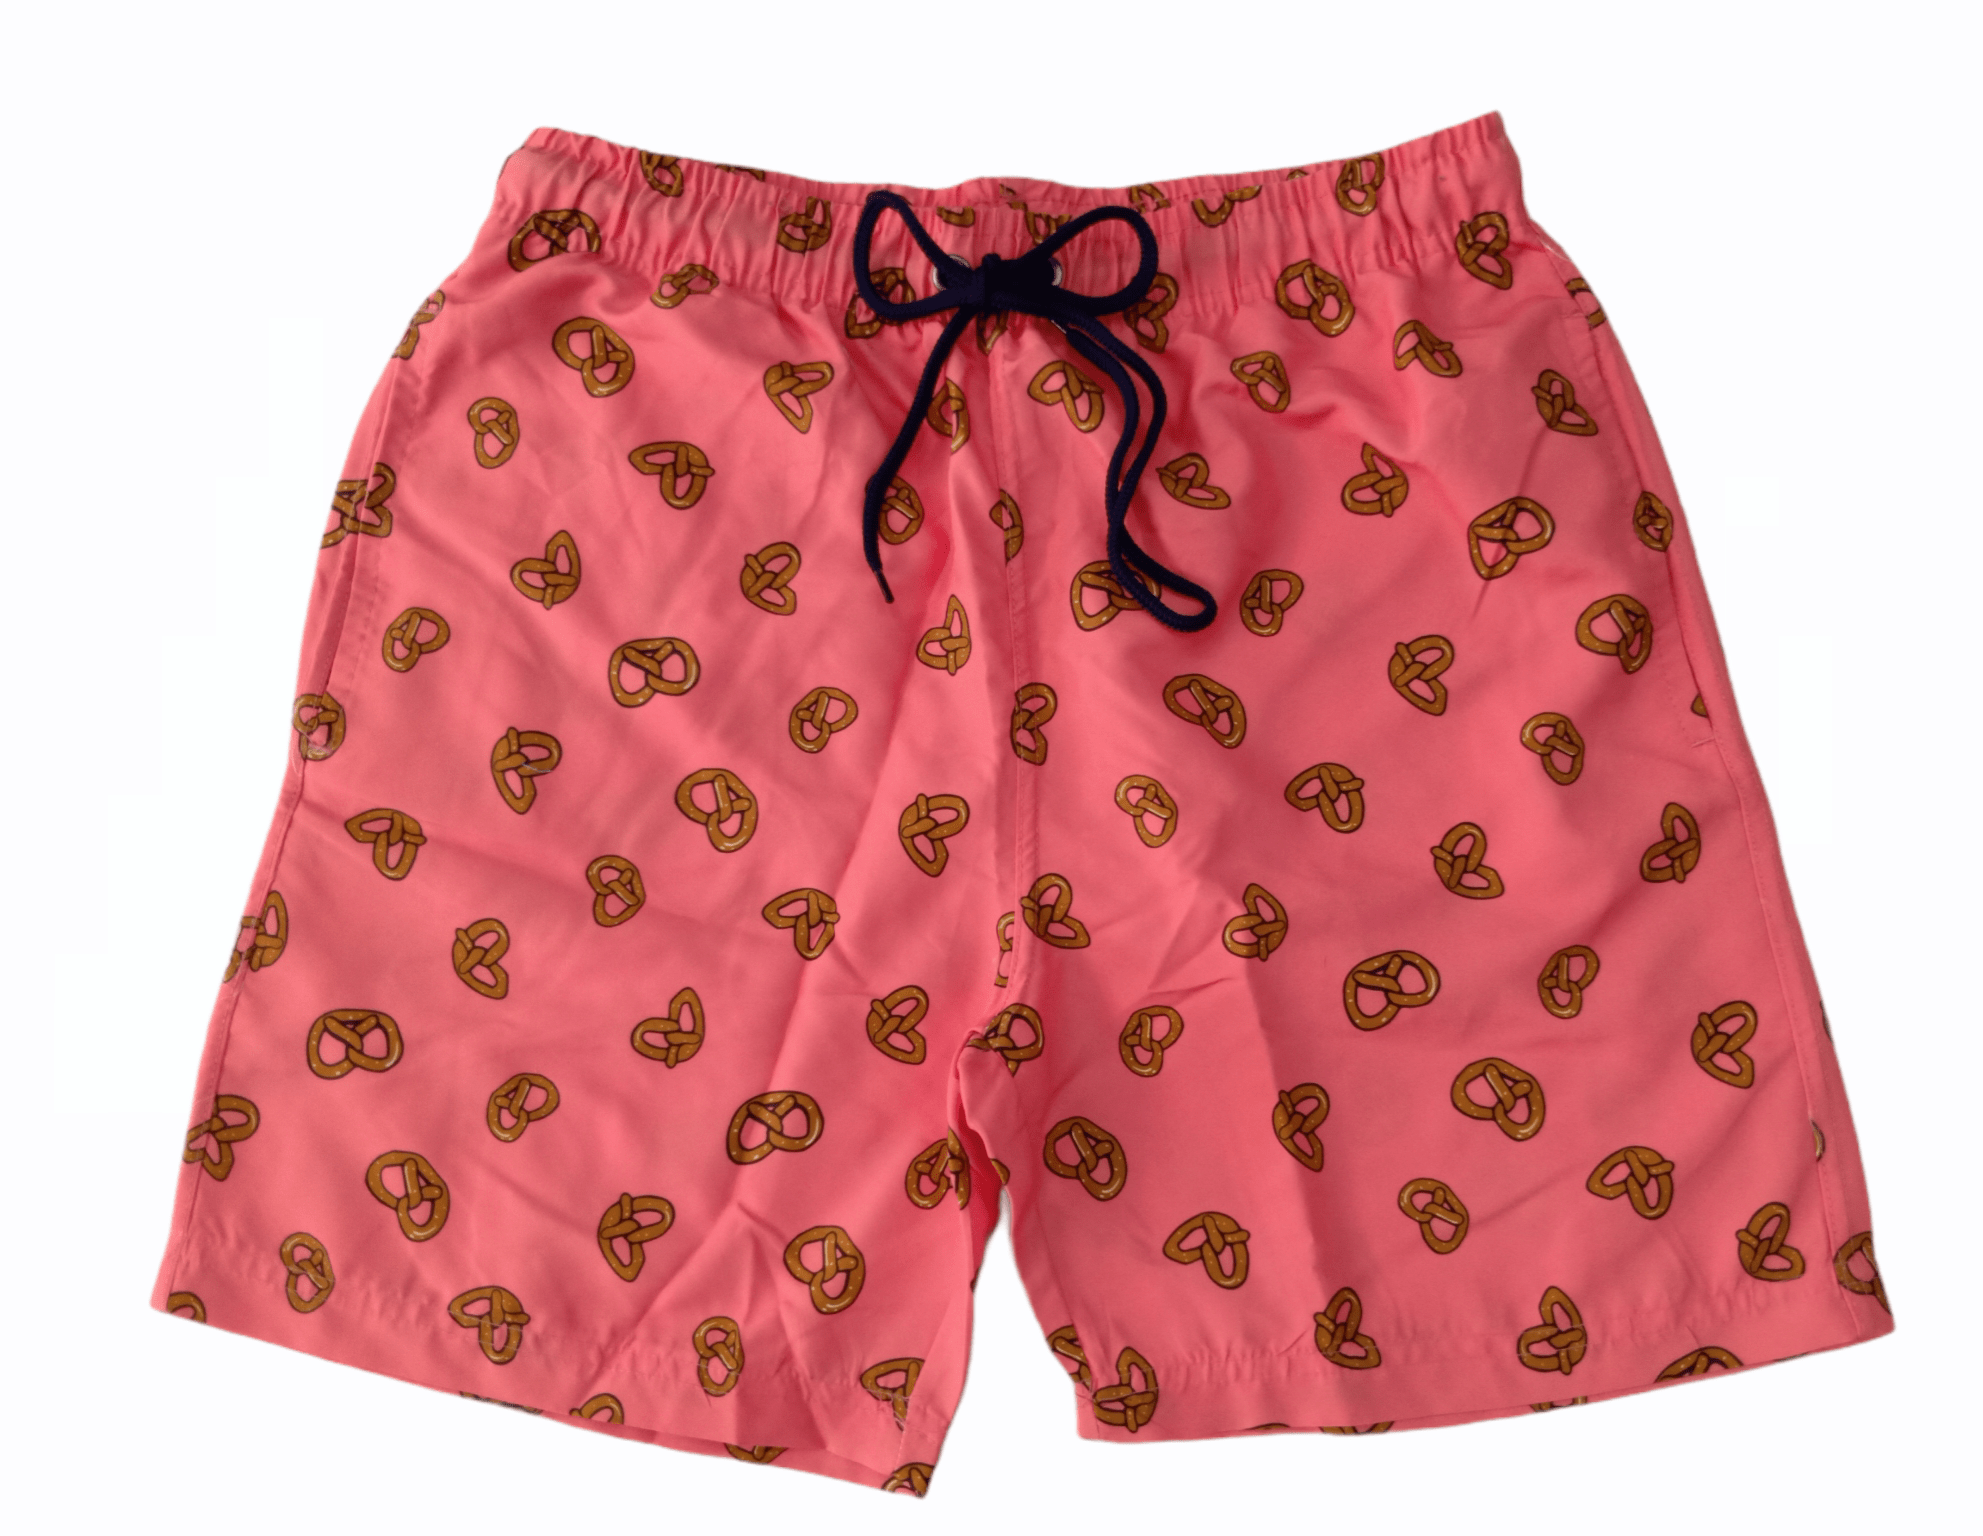 ElOutlet Men Swimwear Patterned Swim Shorts - Pink Pretzels